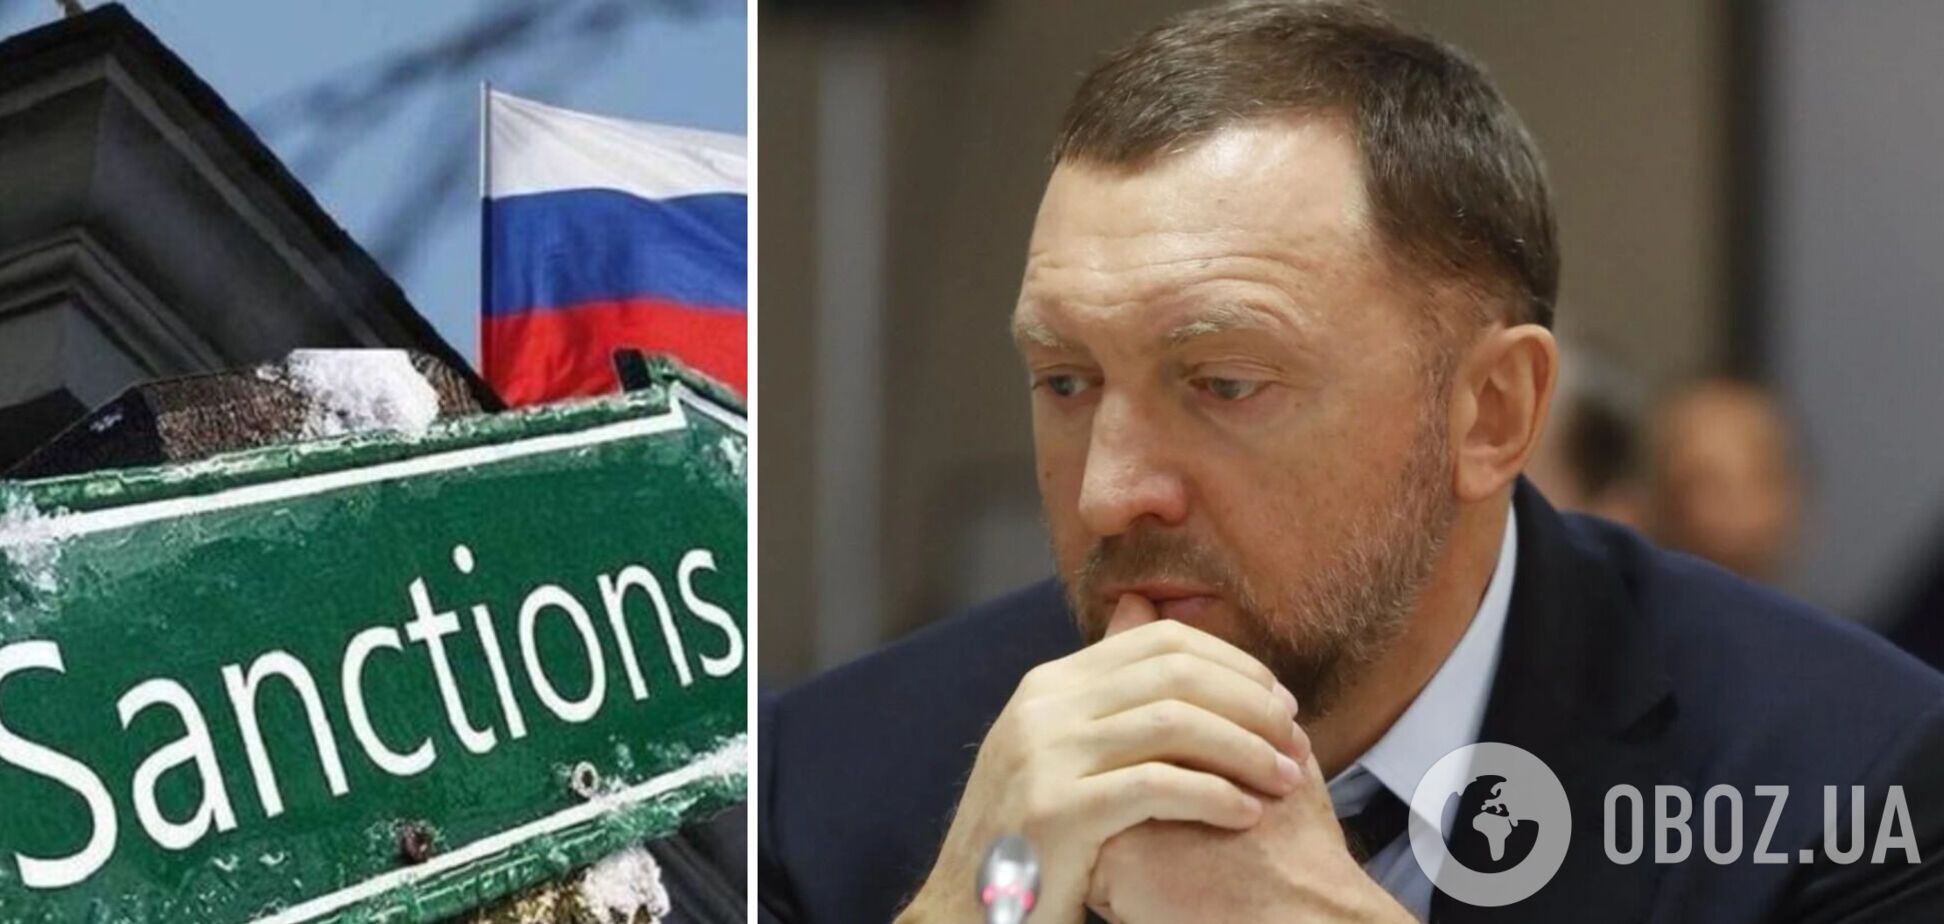 Российский олигарх Дерипаска проиграл апелляцию о снятии санкций США